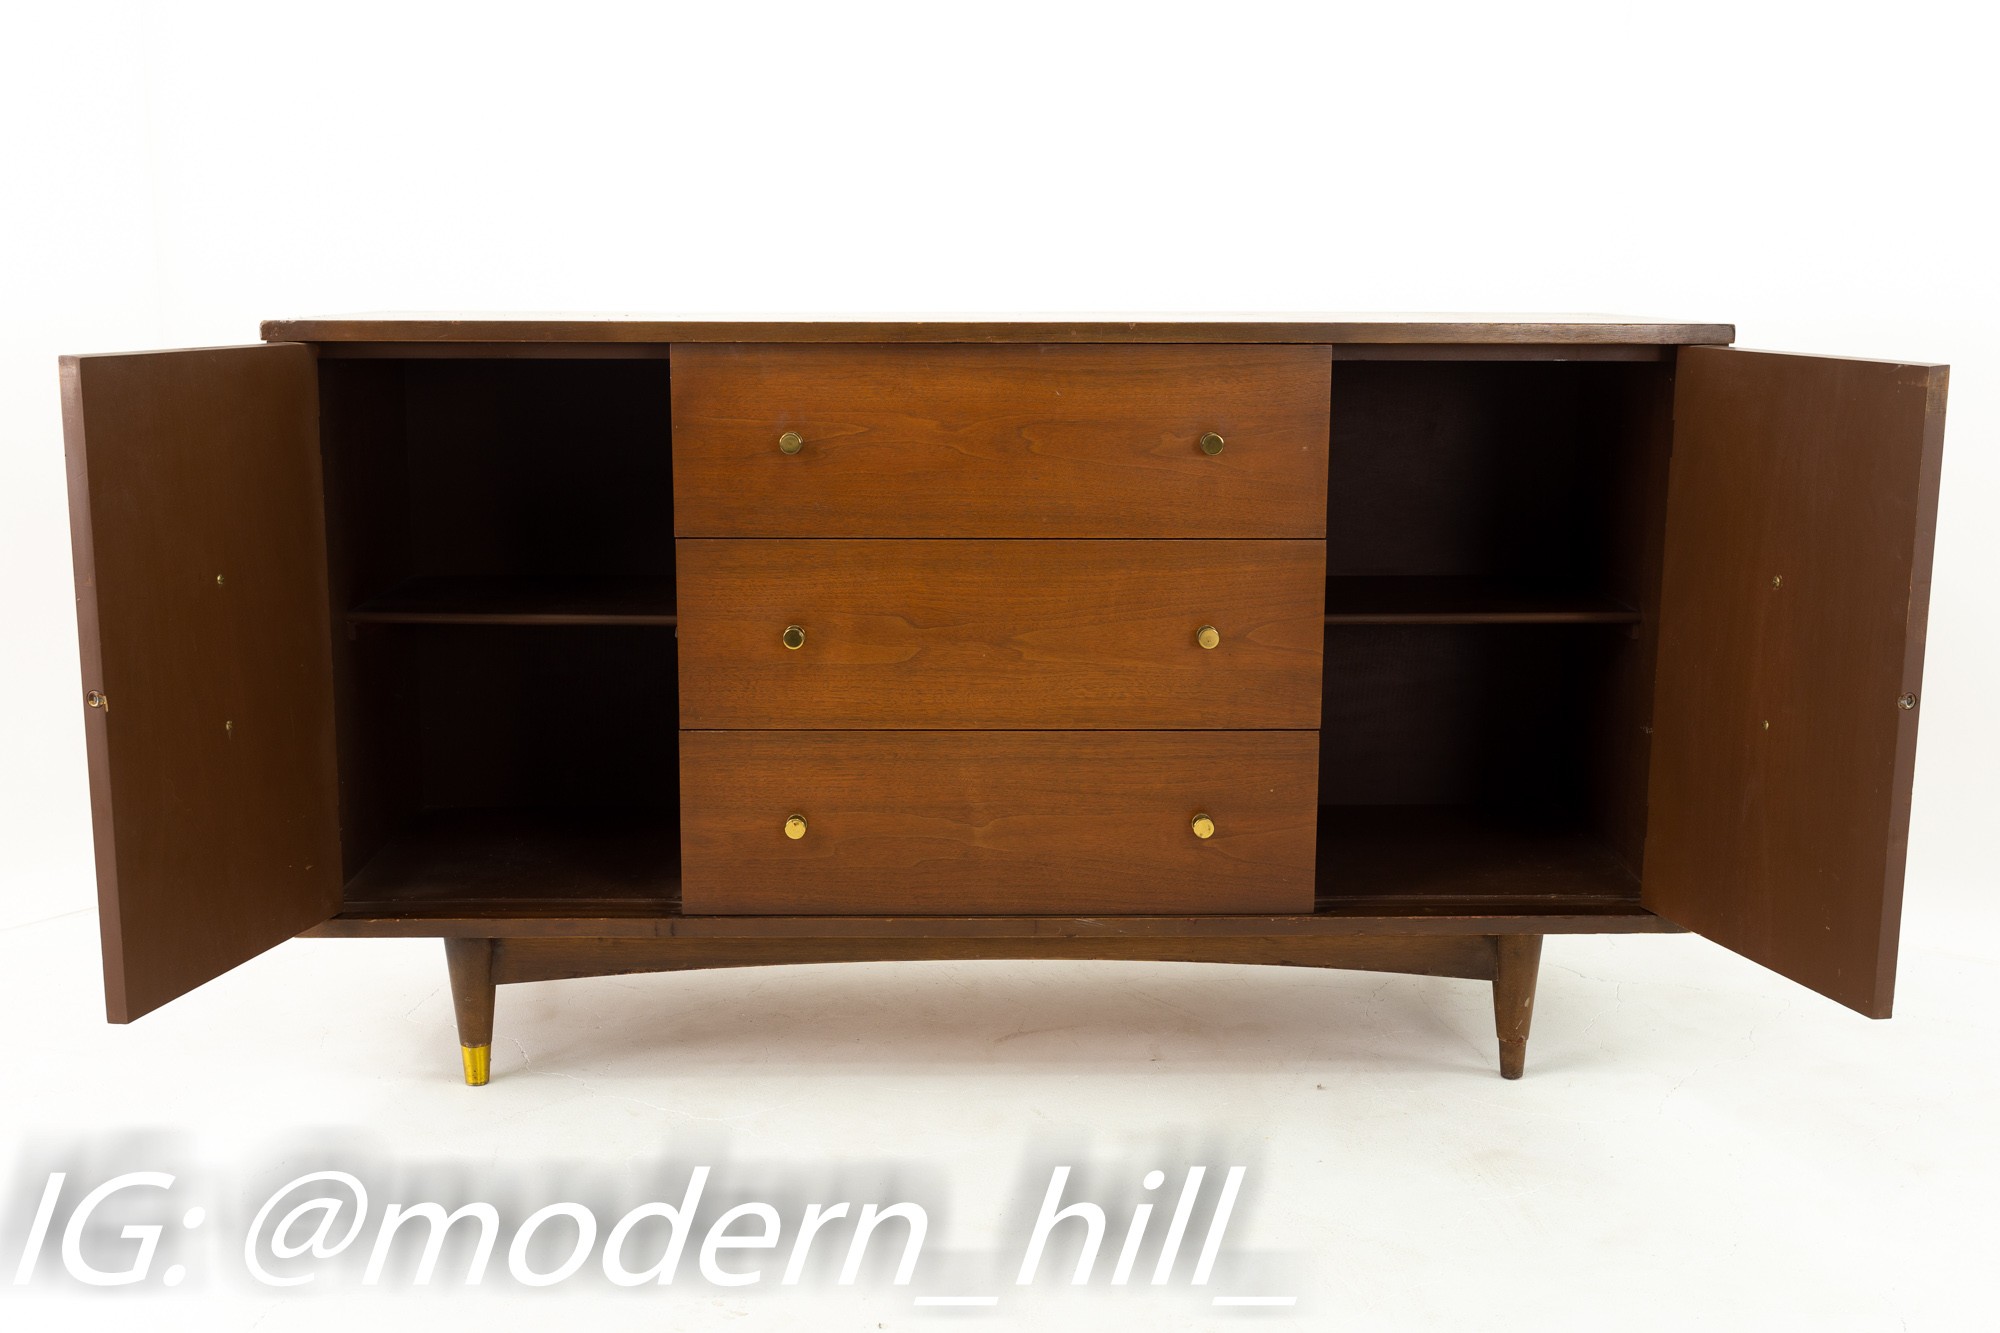 Stanley Furniture Mid Century Walnut Sideboard Credenza